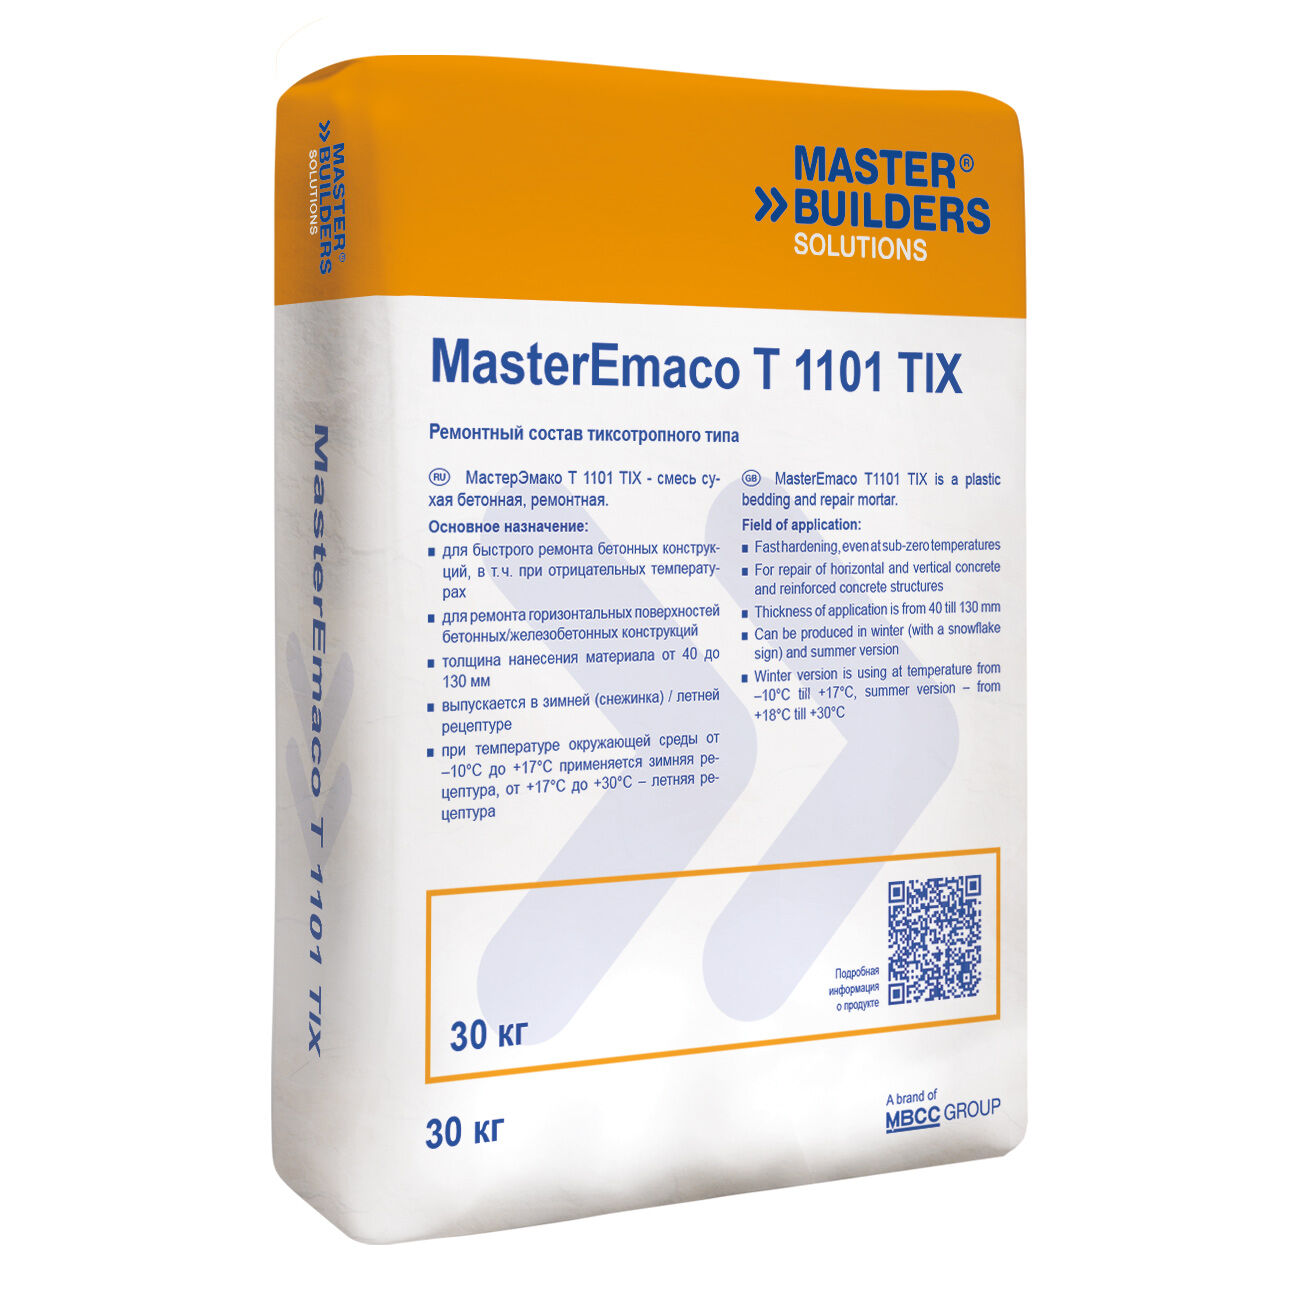 Ремонтная смесь MasterEmaco T 1101 TIX W(EMACO FAST TIXO G W)Тиксотропный тип